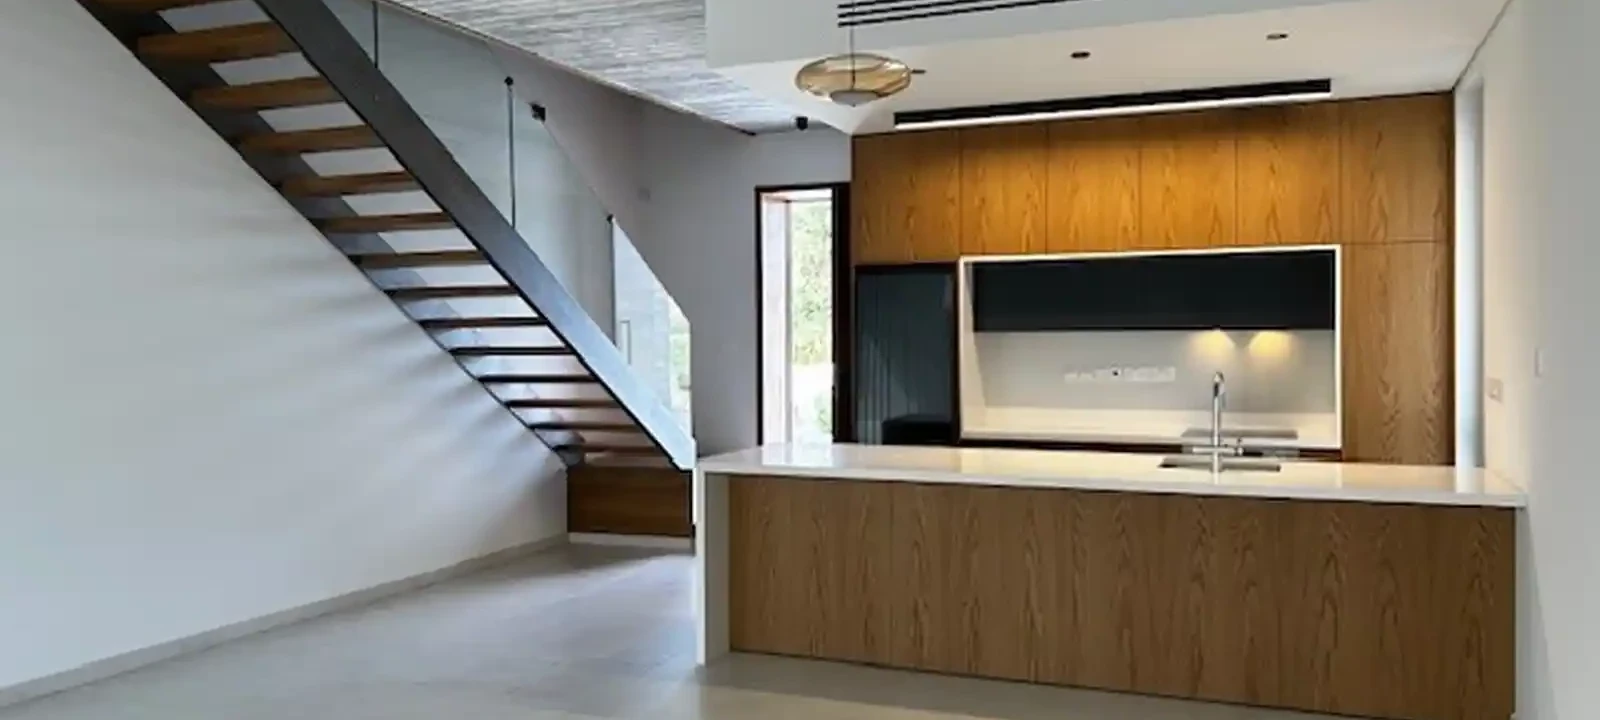 3-bedroom villa to rent €3.000, image 1